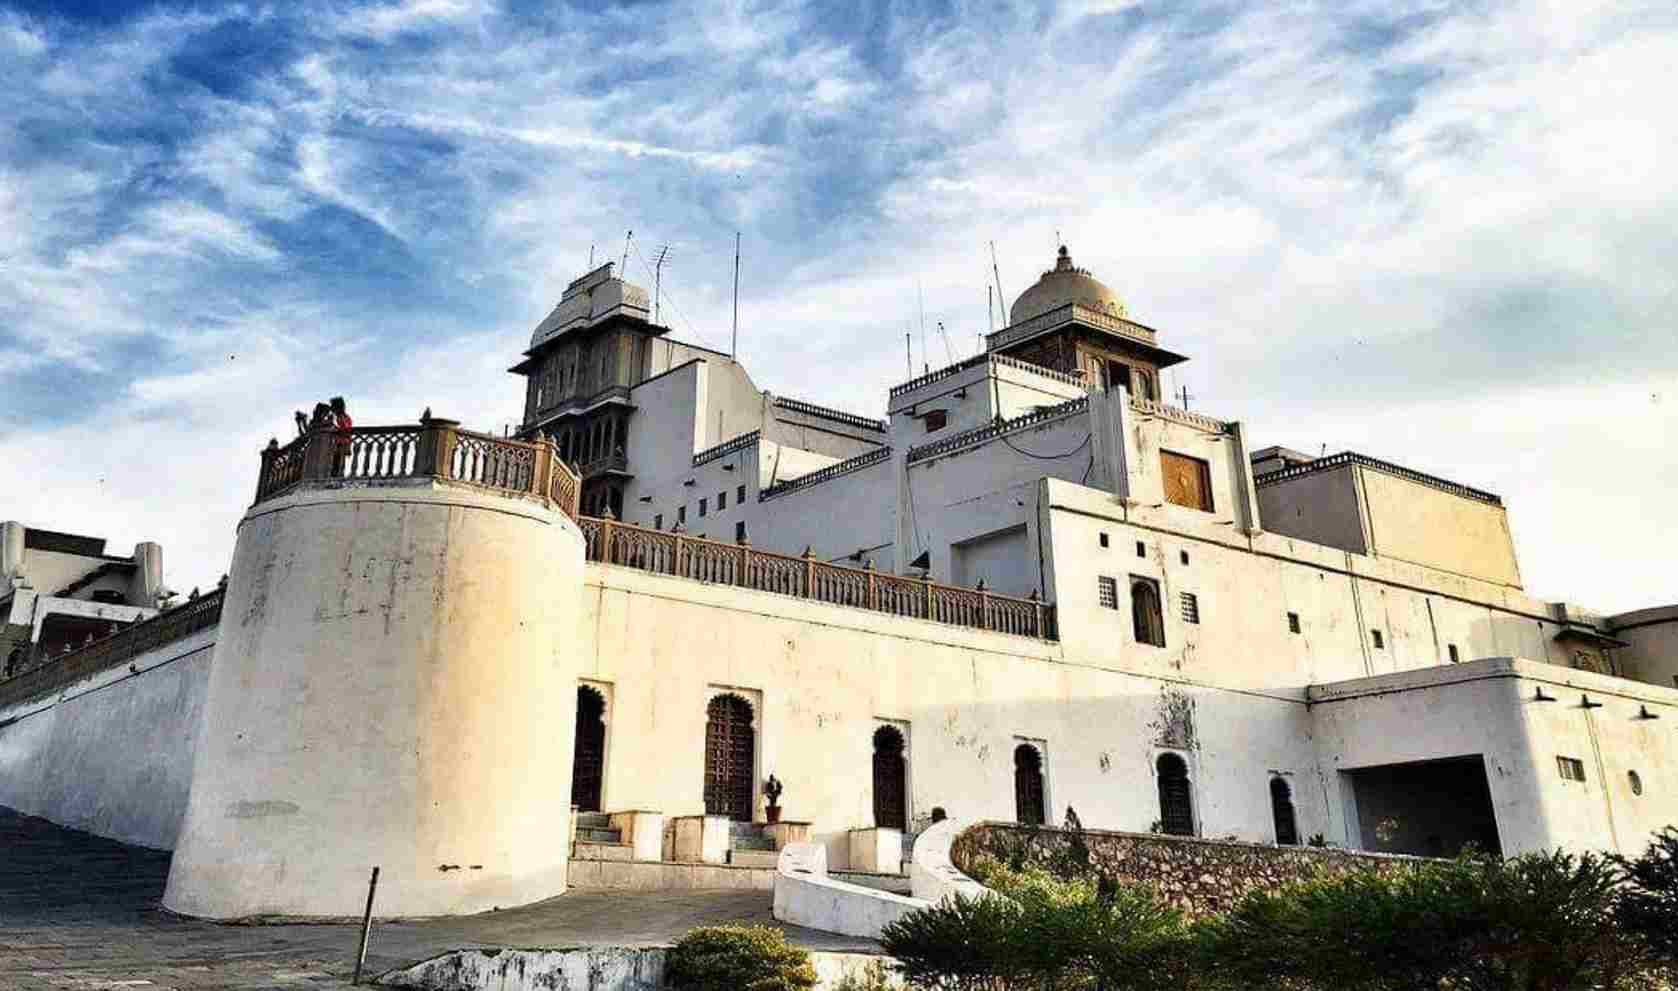 Sajjangarh Palace